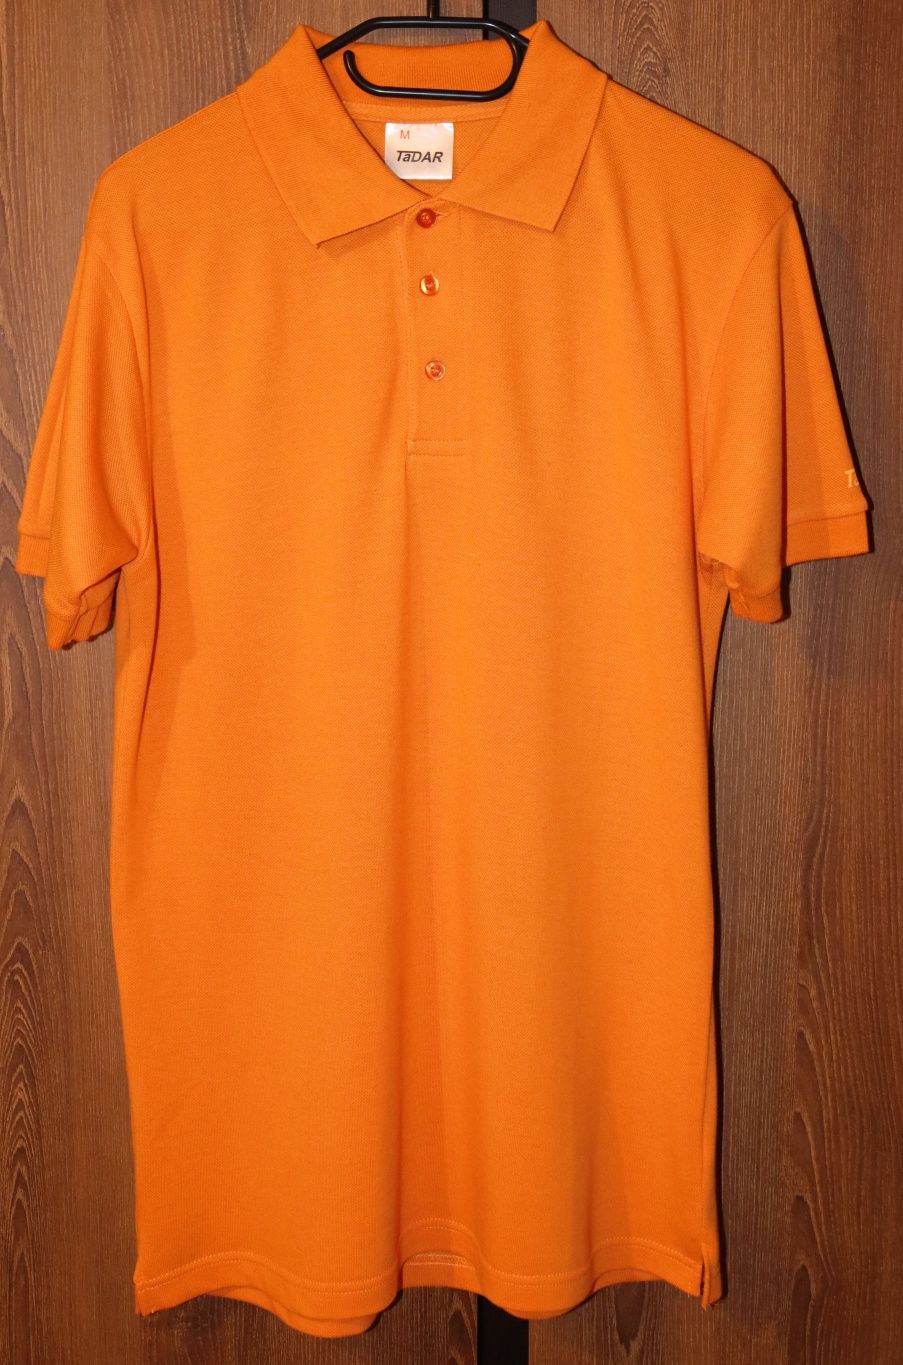 Koszulka Męska Polo Pomarańczowa M 1-3